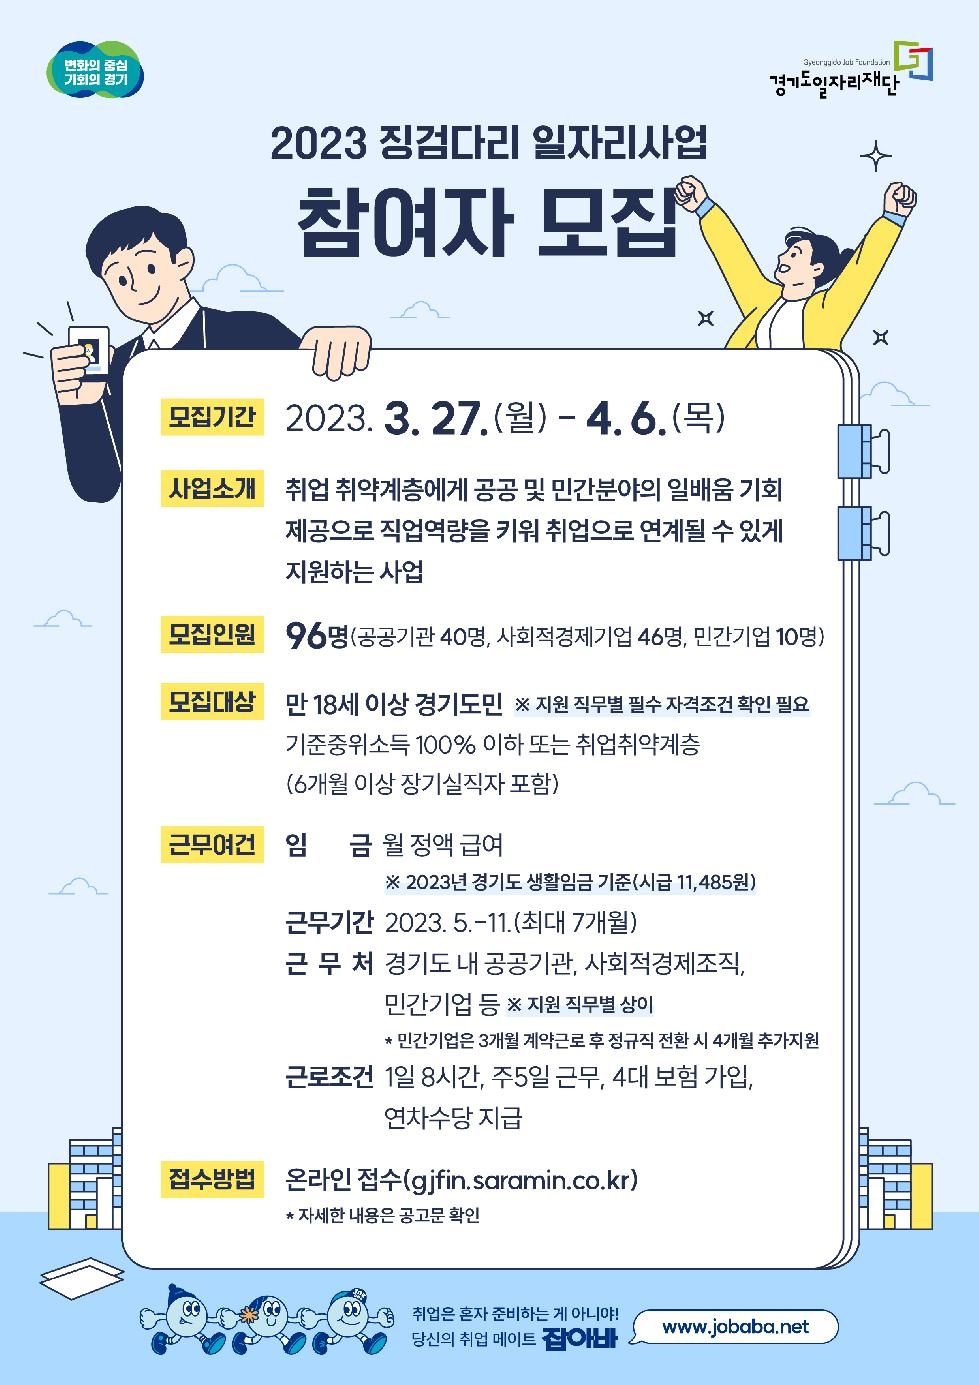 경기도, 도 일자리재단  ‘징검다리 일자리사업’ 참여자 96명 모집